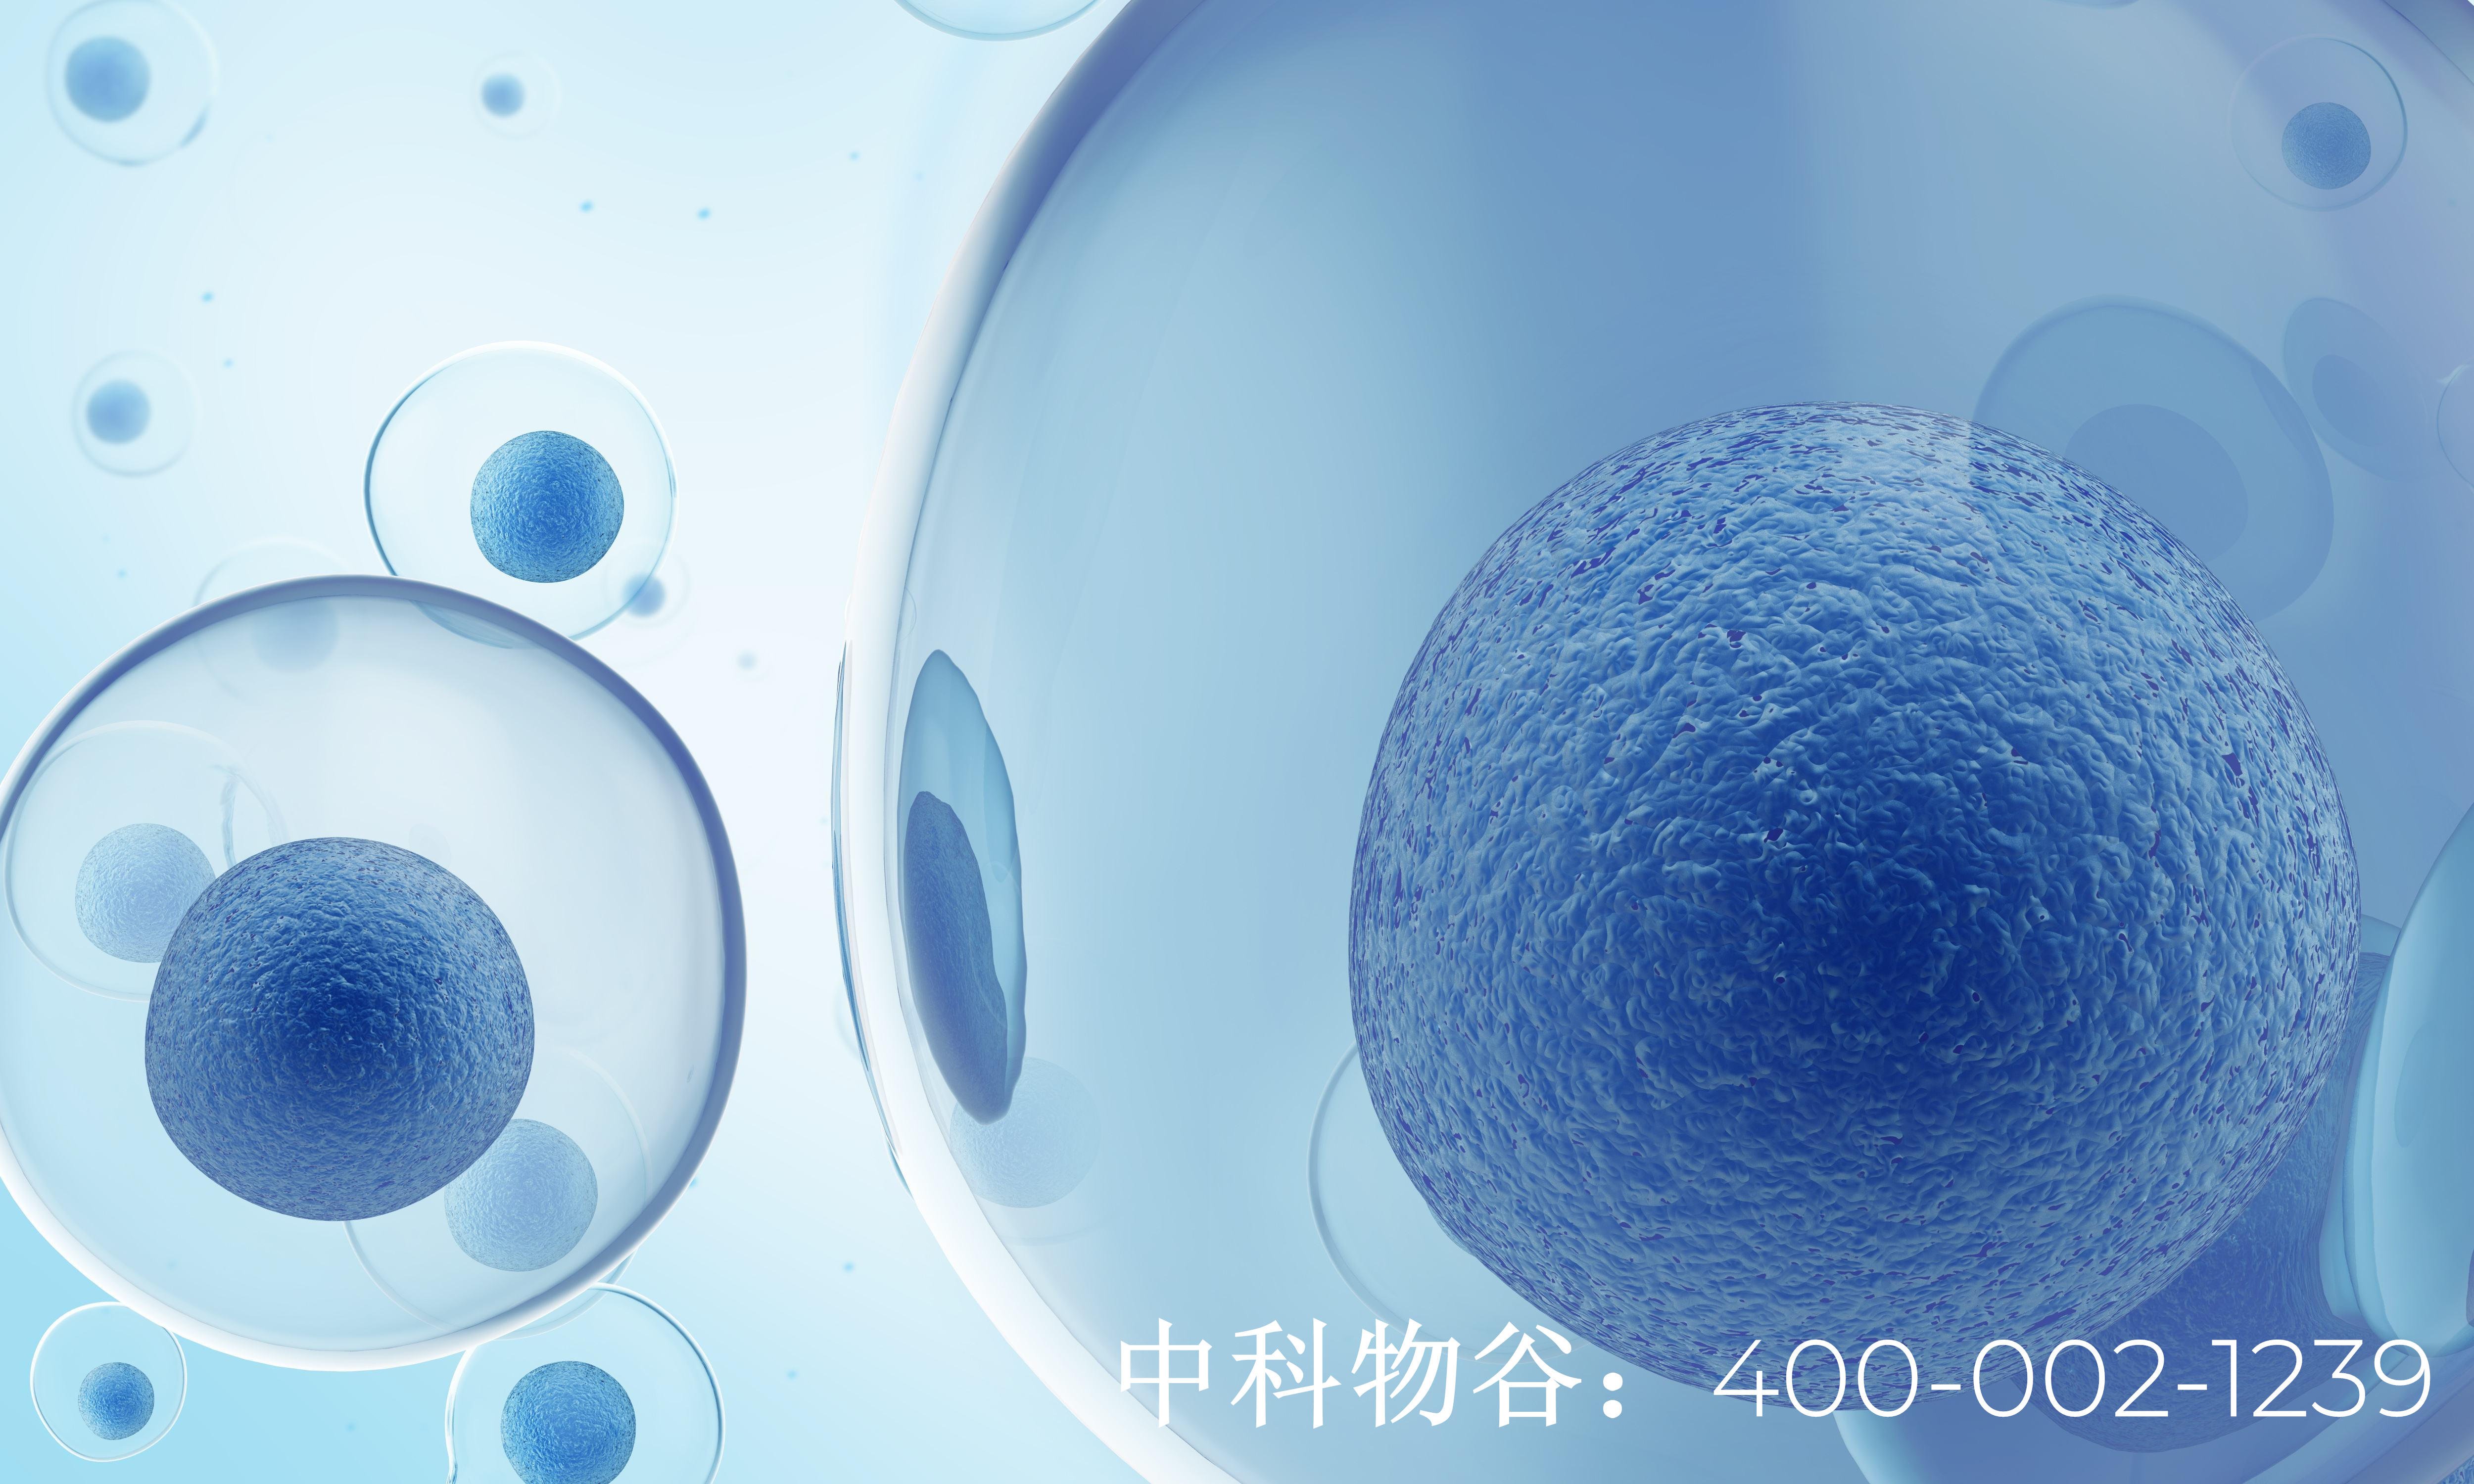 北京医院糖尿病干细胞移植